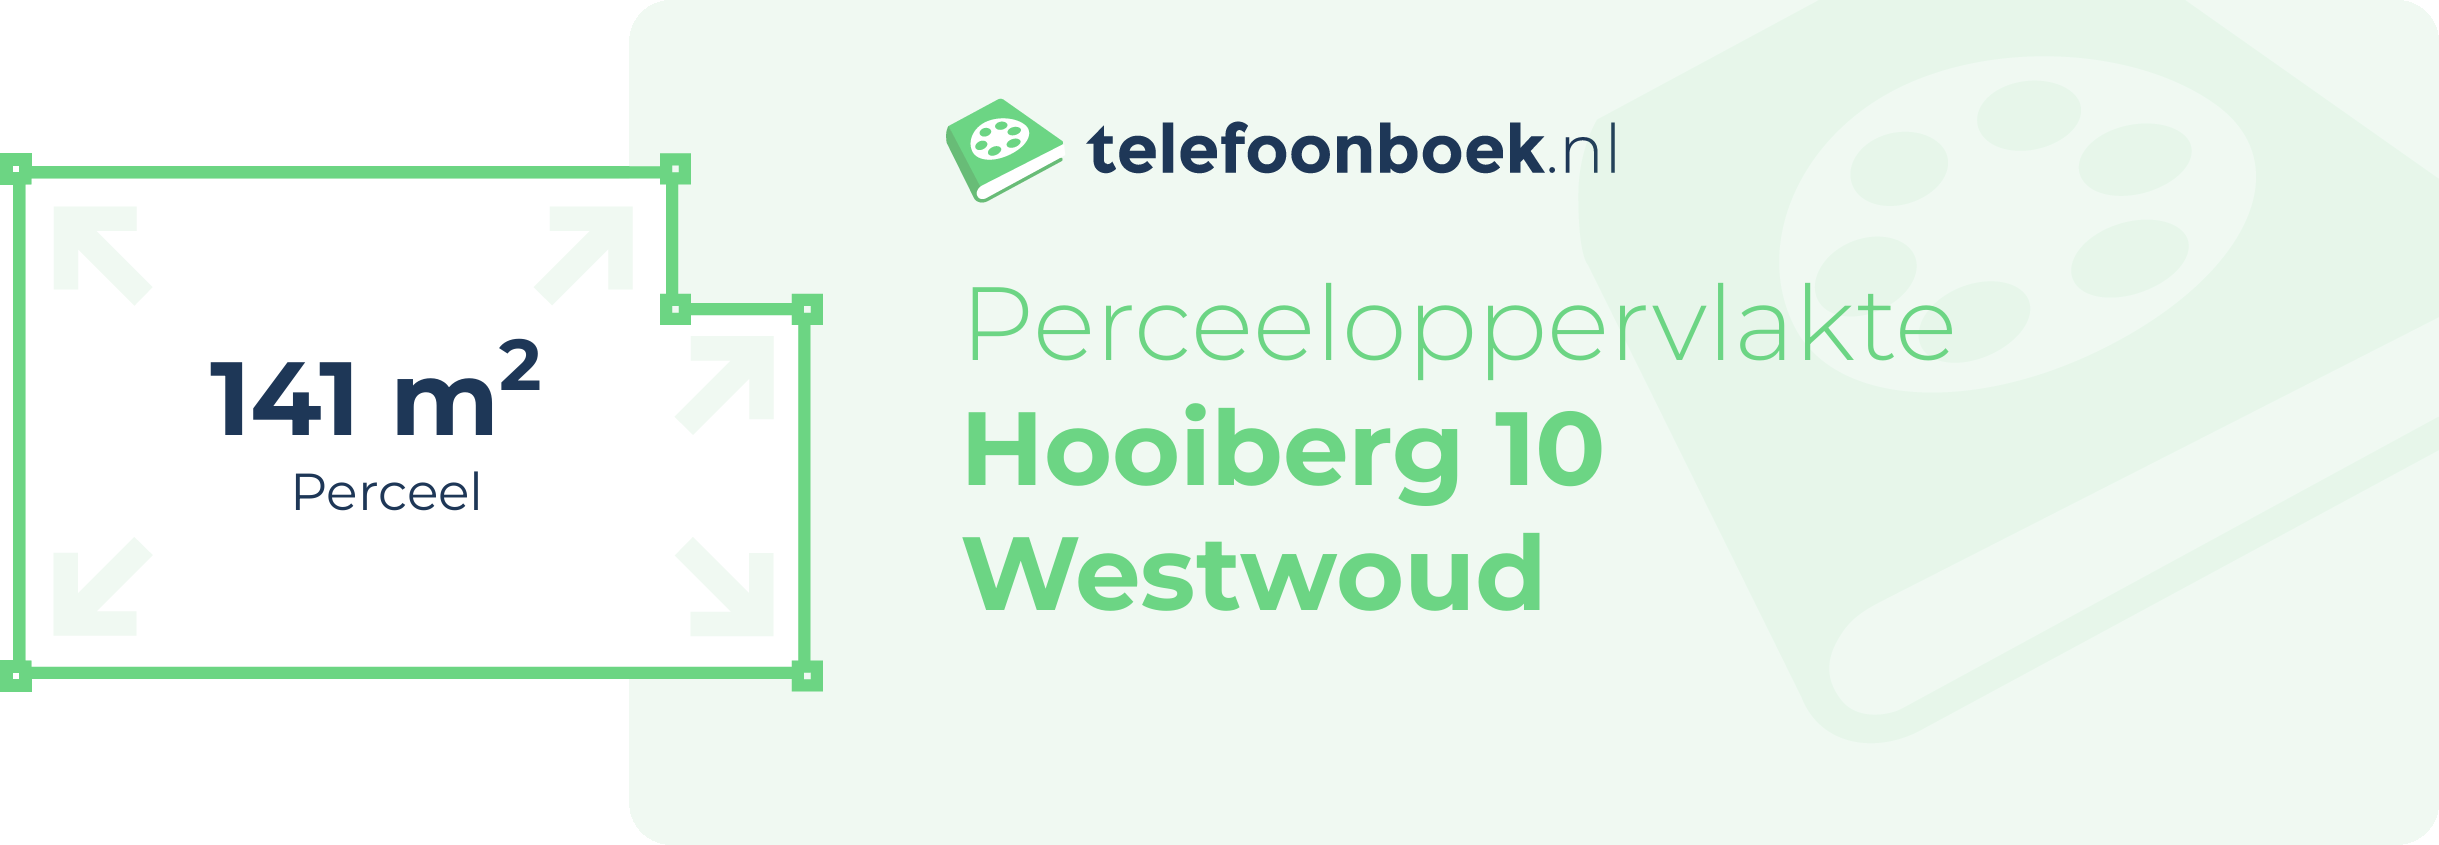 Perceeloppervlakte Hooiberg 10 Westwoud